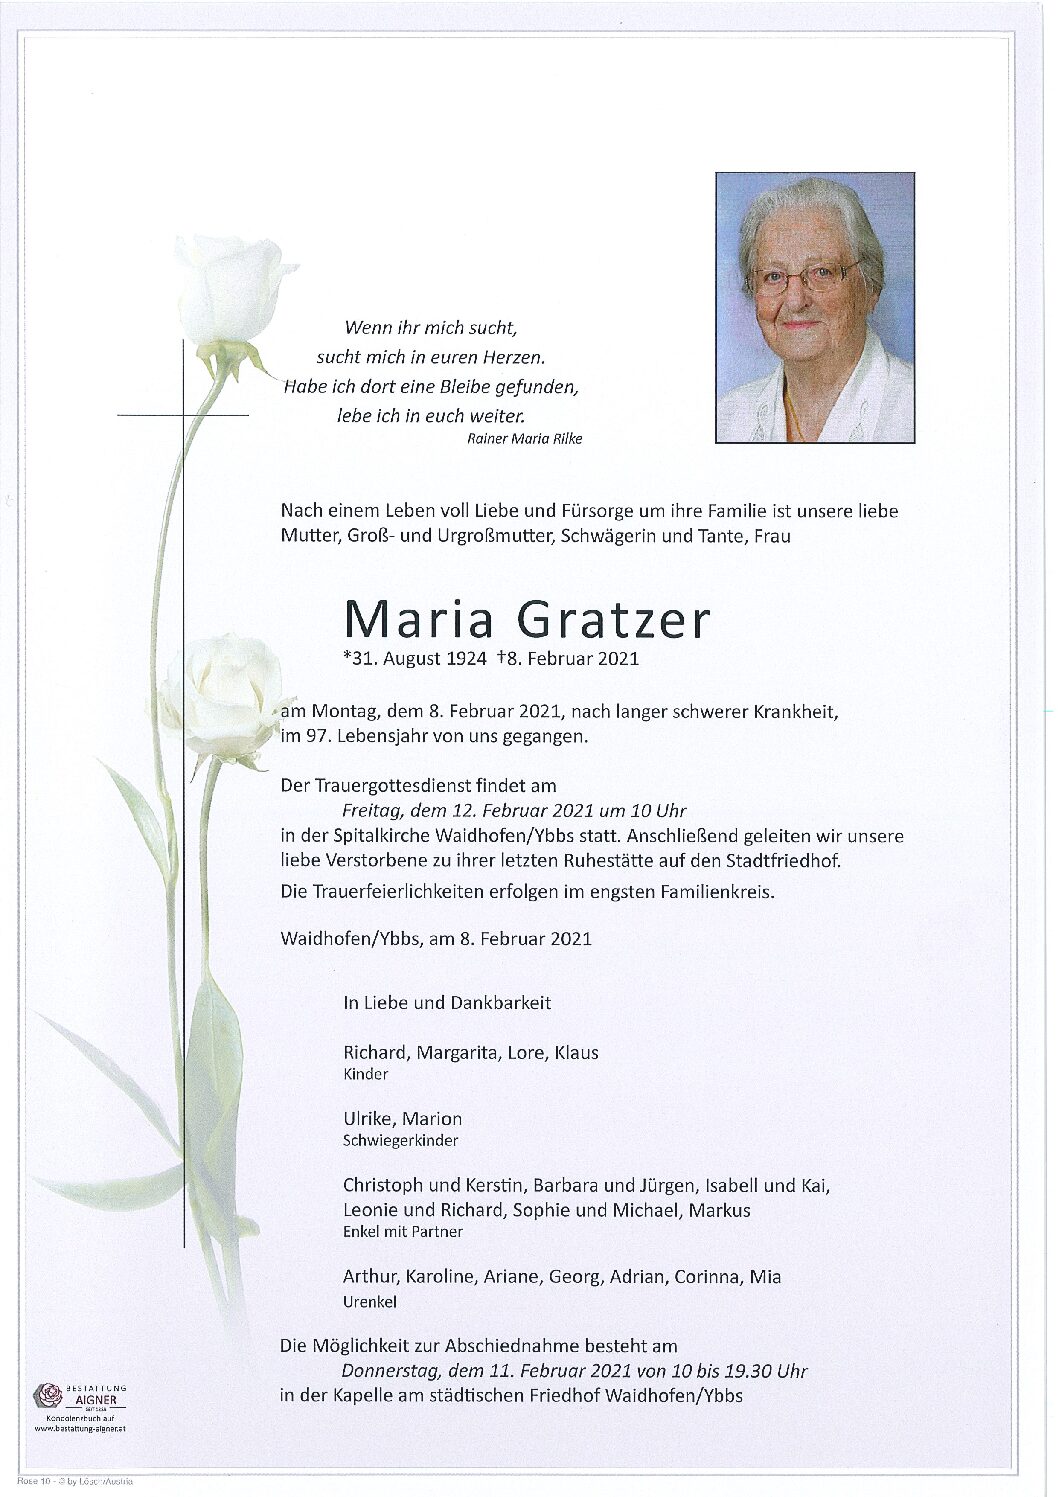 Maria Gratzer